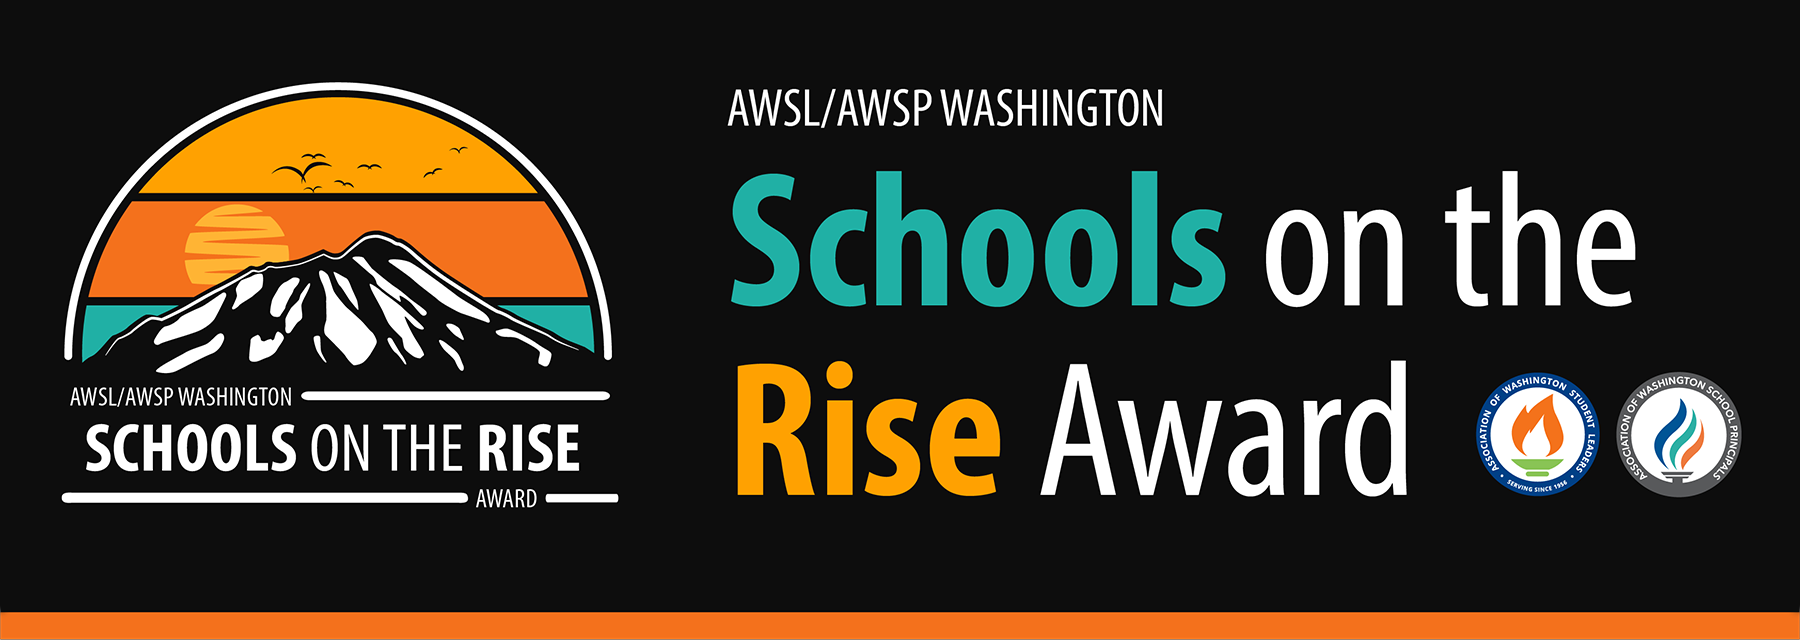 Washington_Schools_on_the_Rise_Award_logo_blog